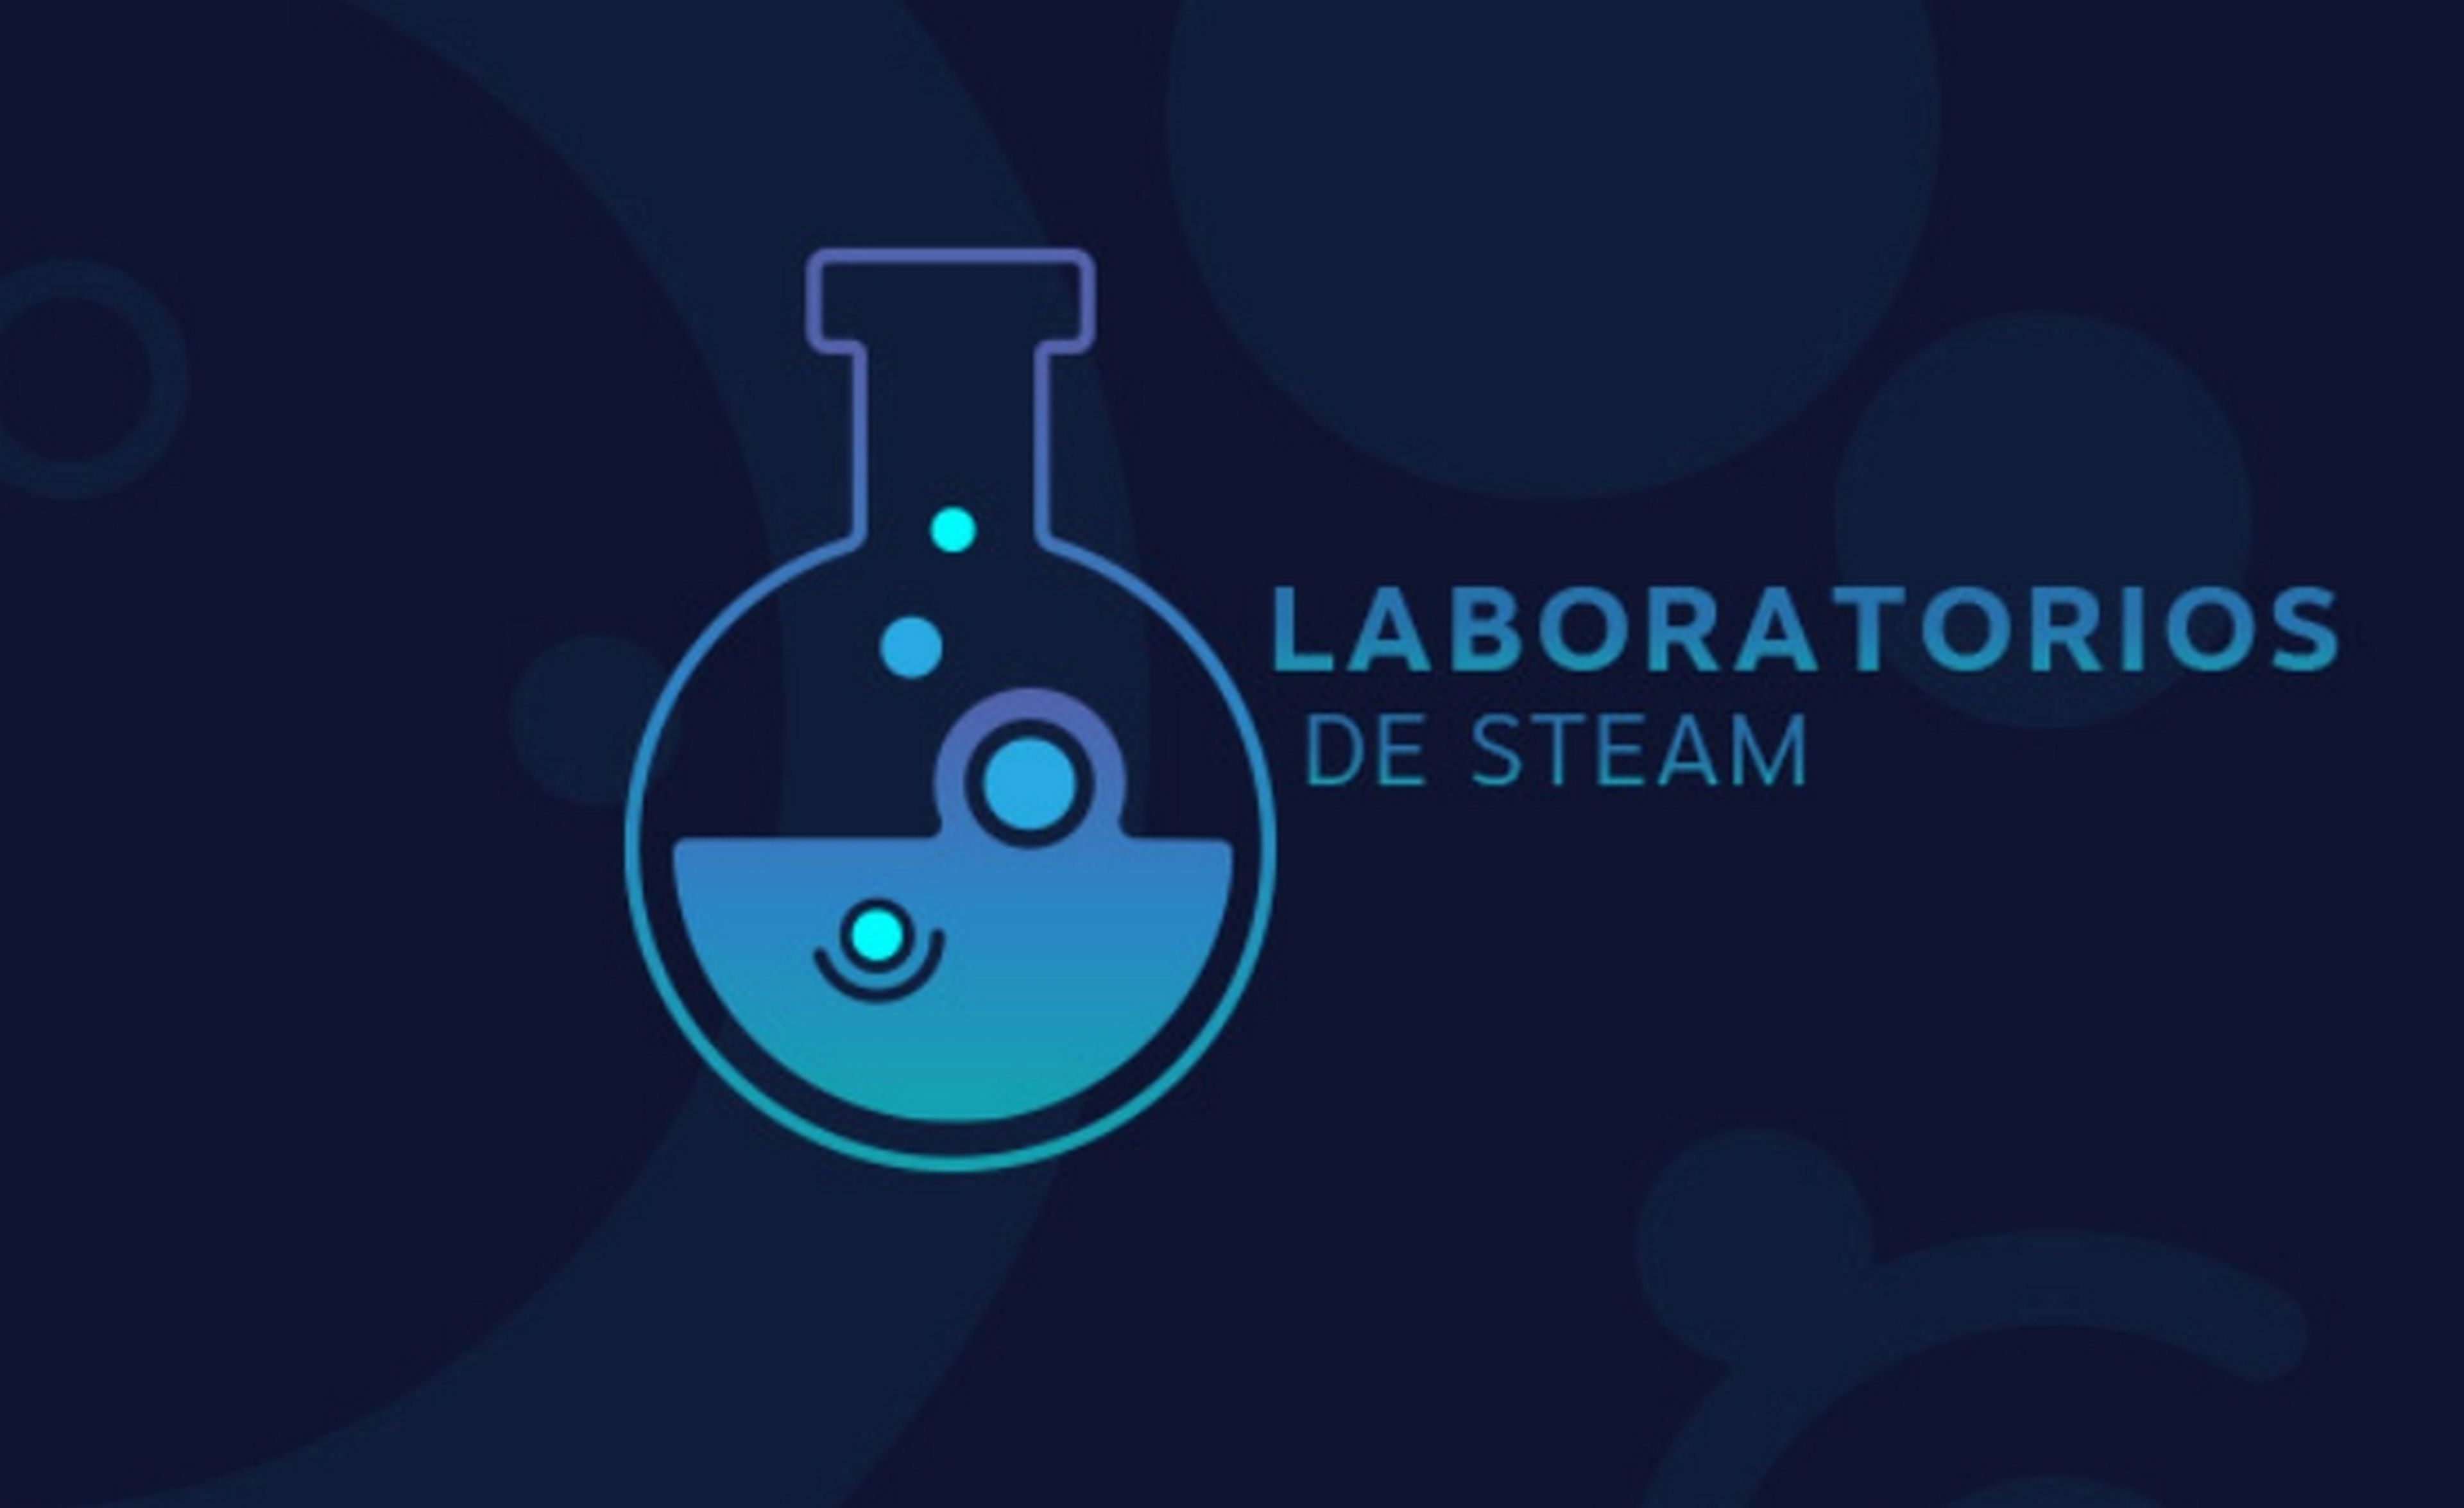 Steam estrena un Laboratorio para que experimientes con la inteligencia artificial